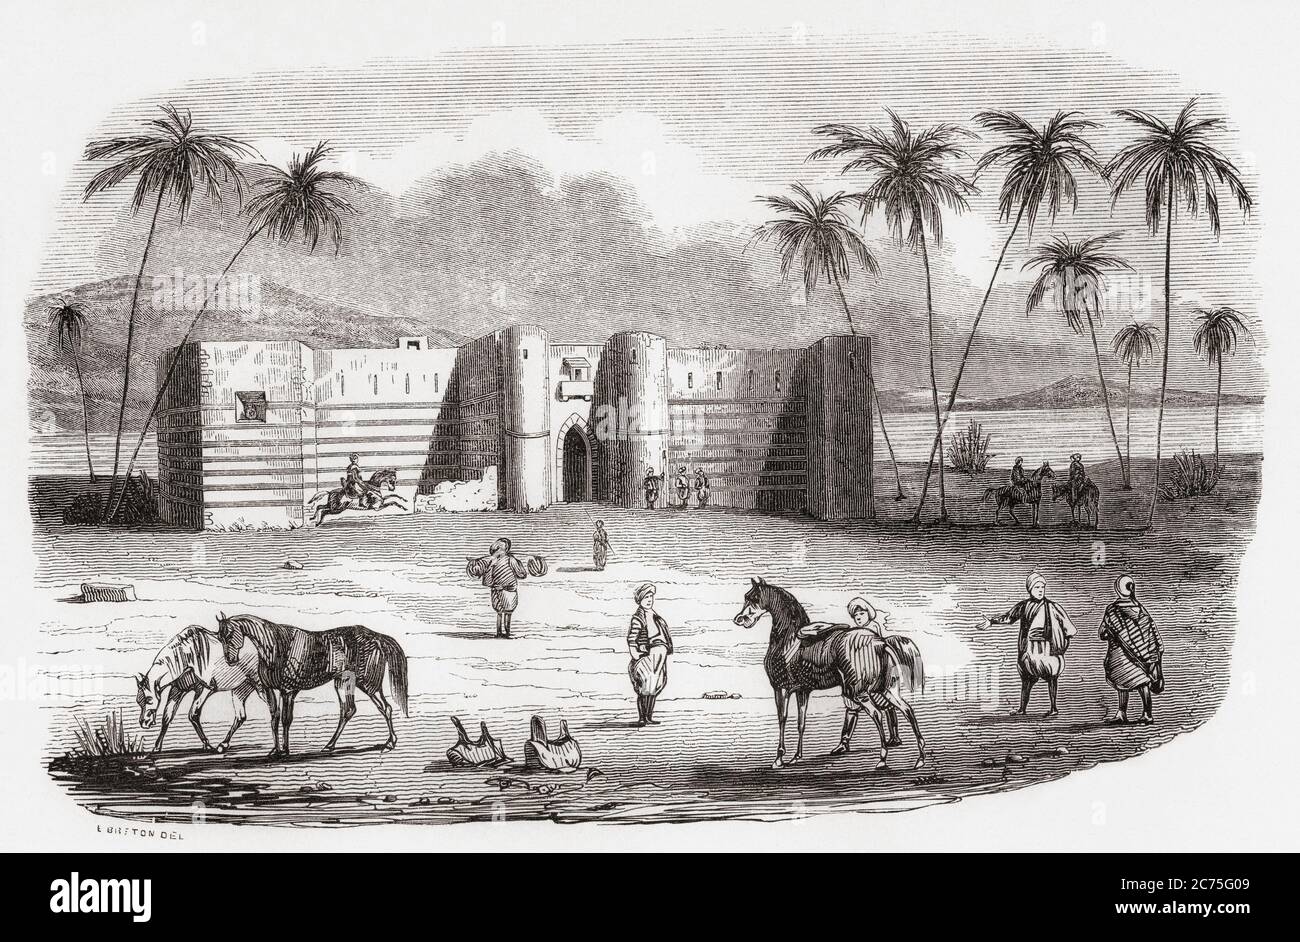 El Castillo de Aqaba, el Castillo de Mamluk o el fuerte de Aqaba, Aqaba, Jordania. De Monumentos de Tous les Peuples, publicado en 1843. Foto de stock